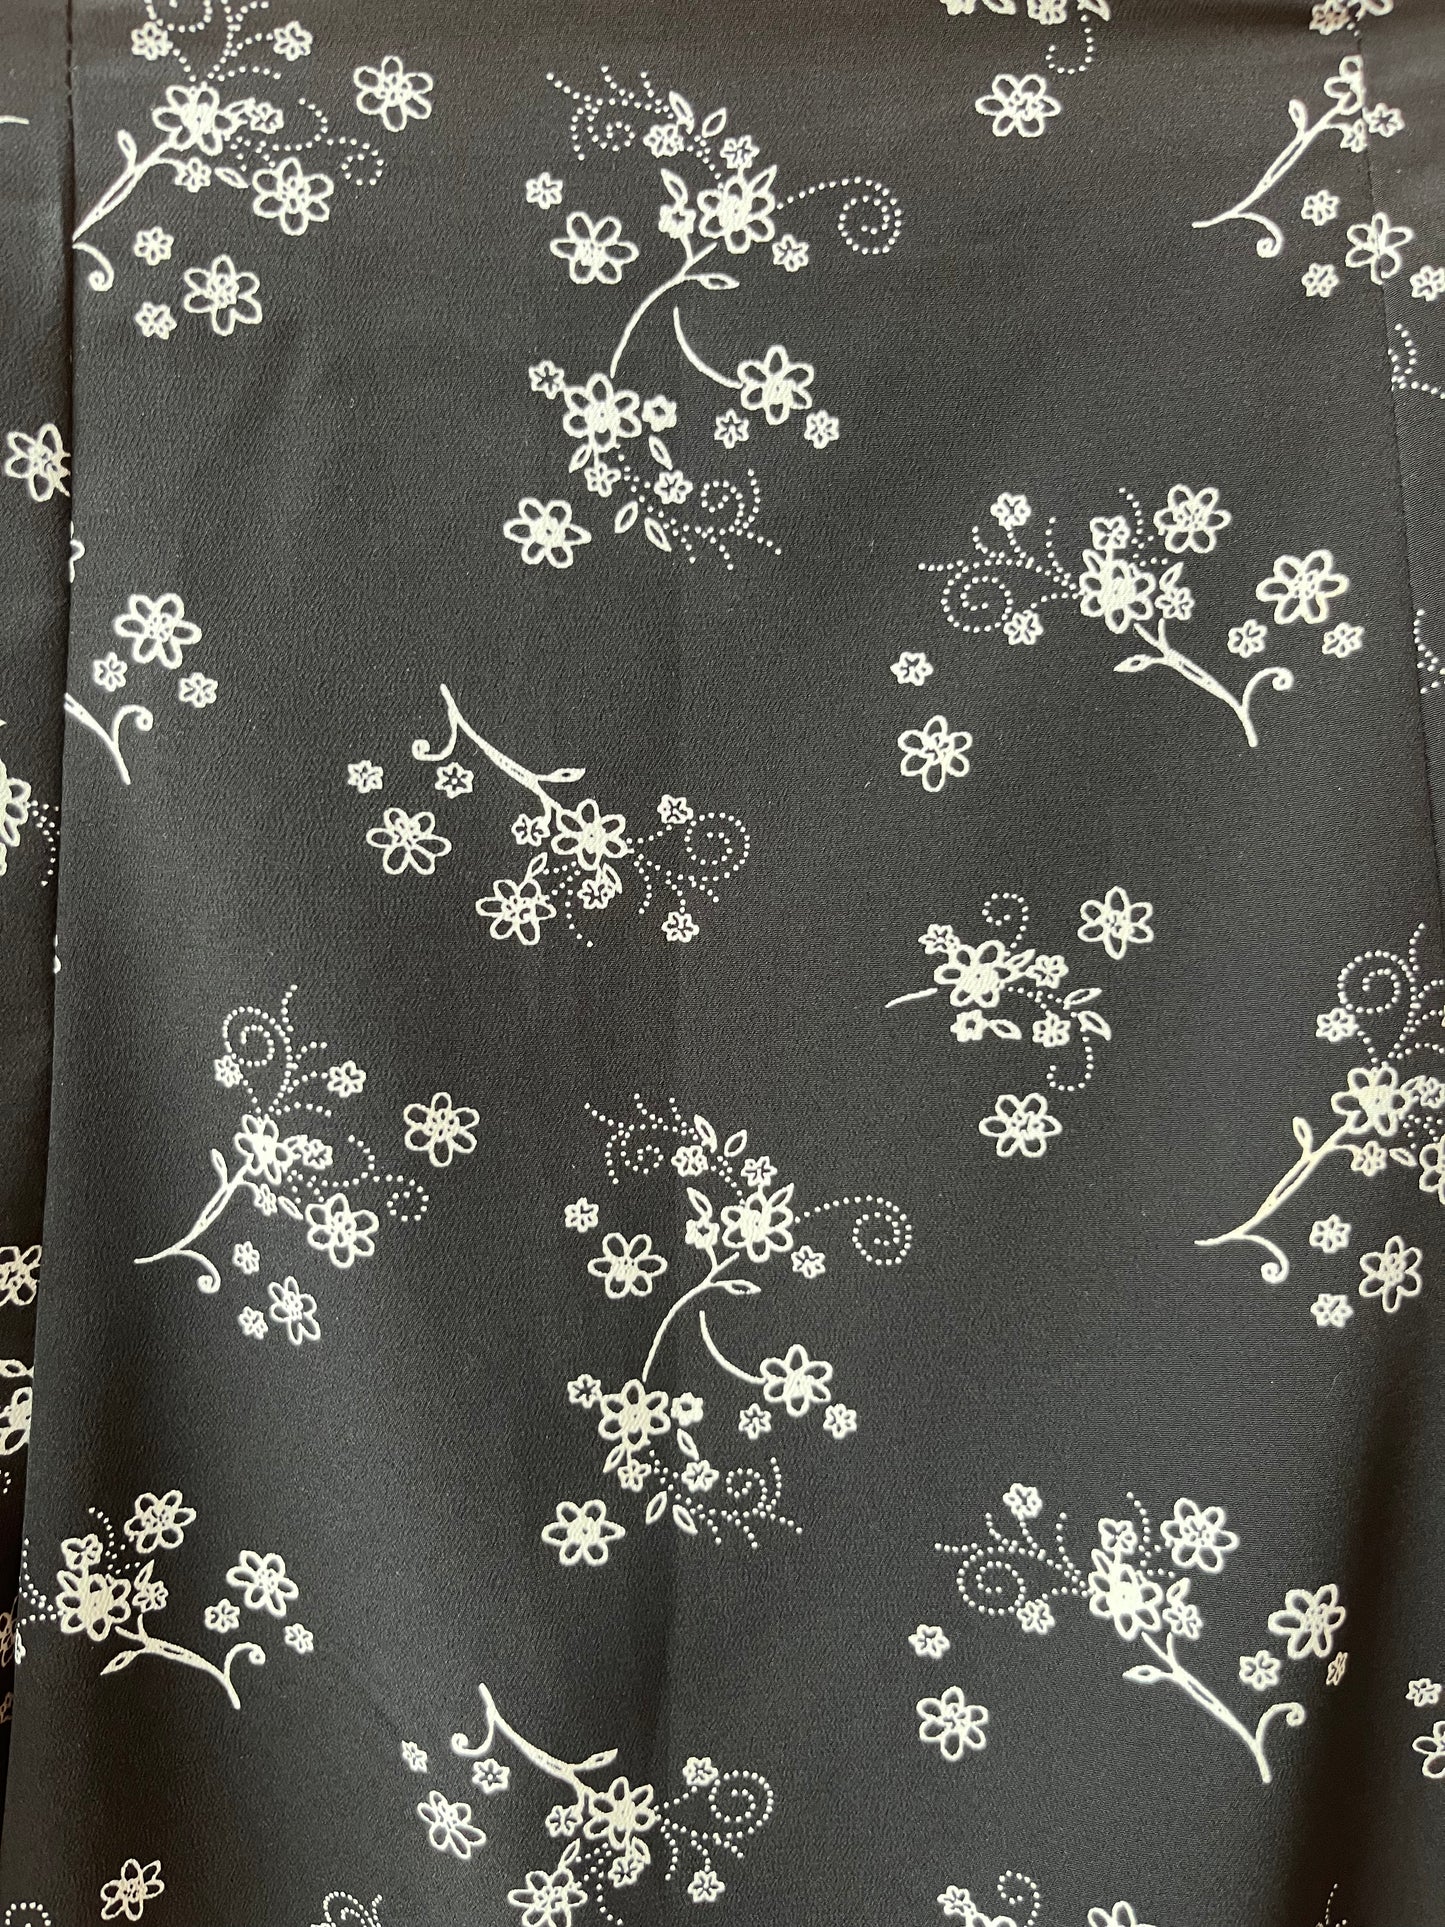 90’s Vintage Black & White Floral Pleated Mini Skirt / 28 Waist